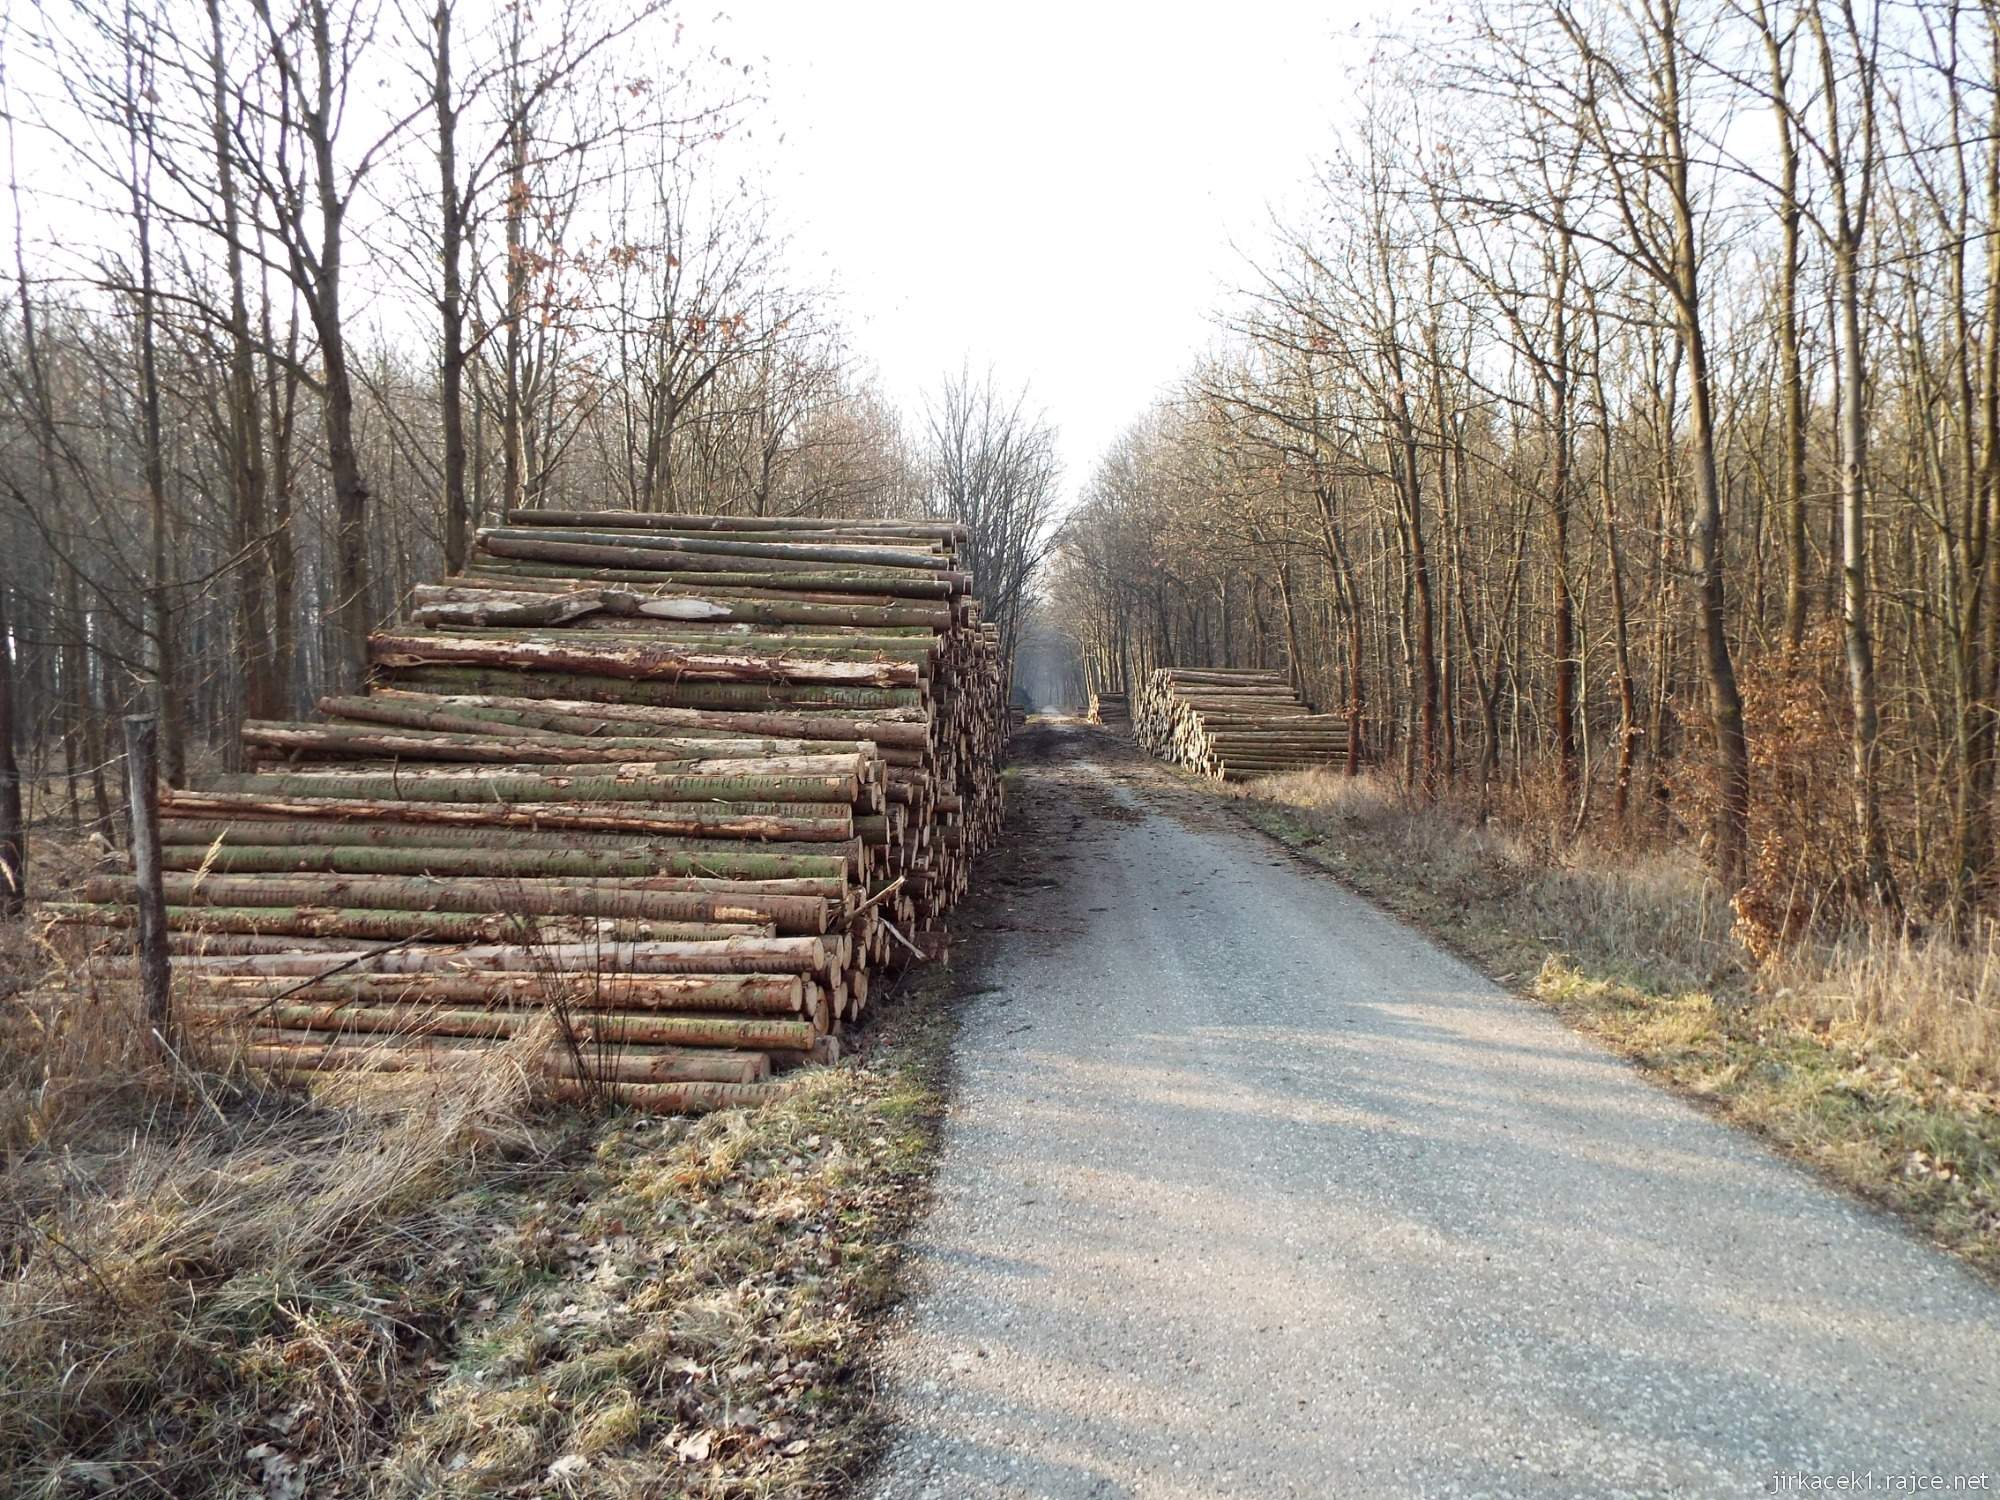 H - cesta mezi Lhotou a Březové 19 - asfaltová cyklostezka a hromady vytěženého dřeva